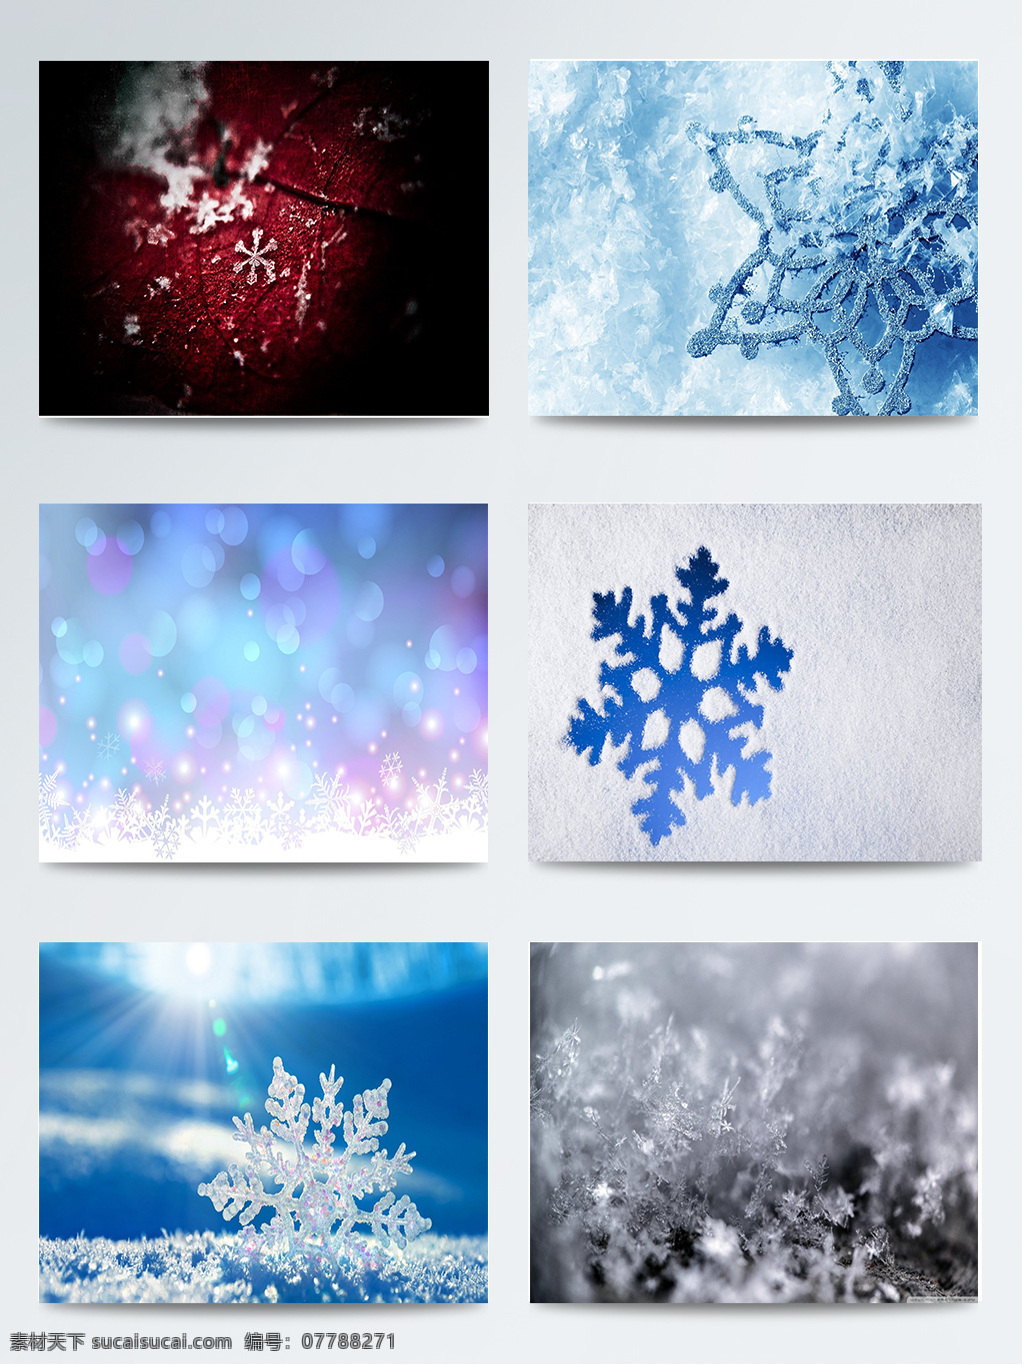 组 黑 蓝白 雪花 背景 图 白色 冬季 蓝色 浅白色 浅蓝色 深蓝色 水蓝色